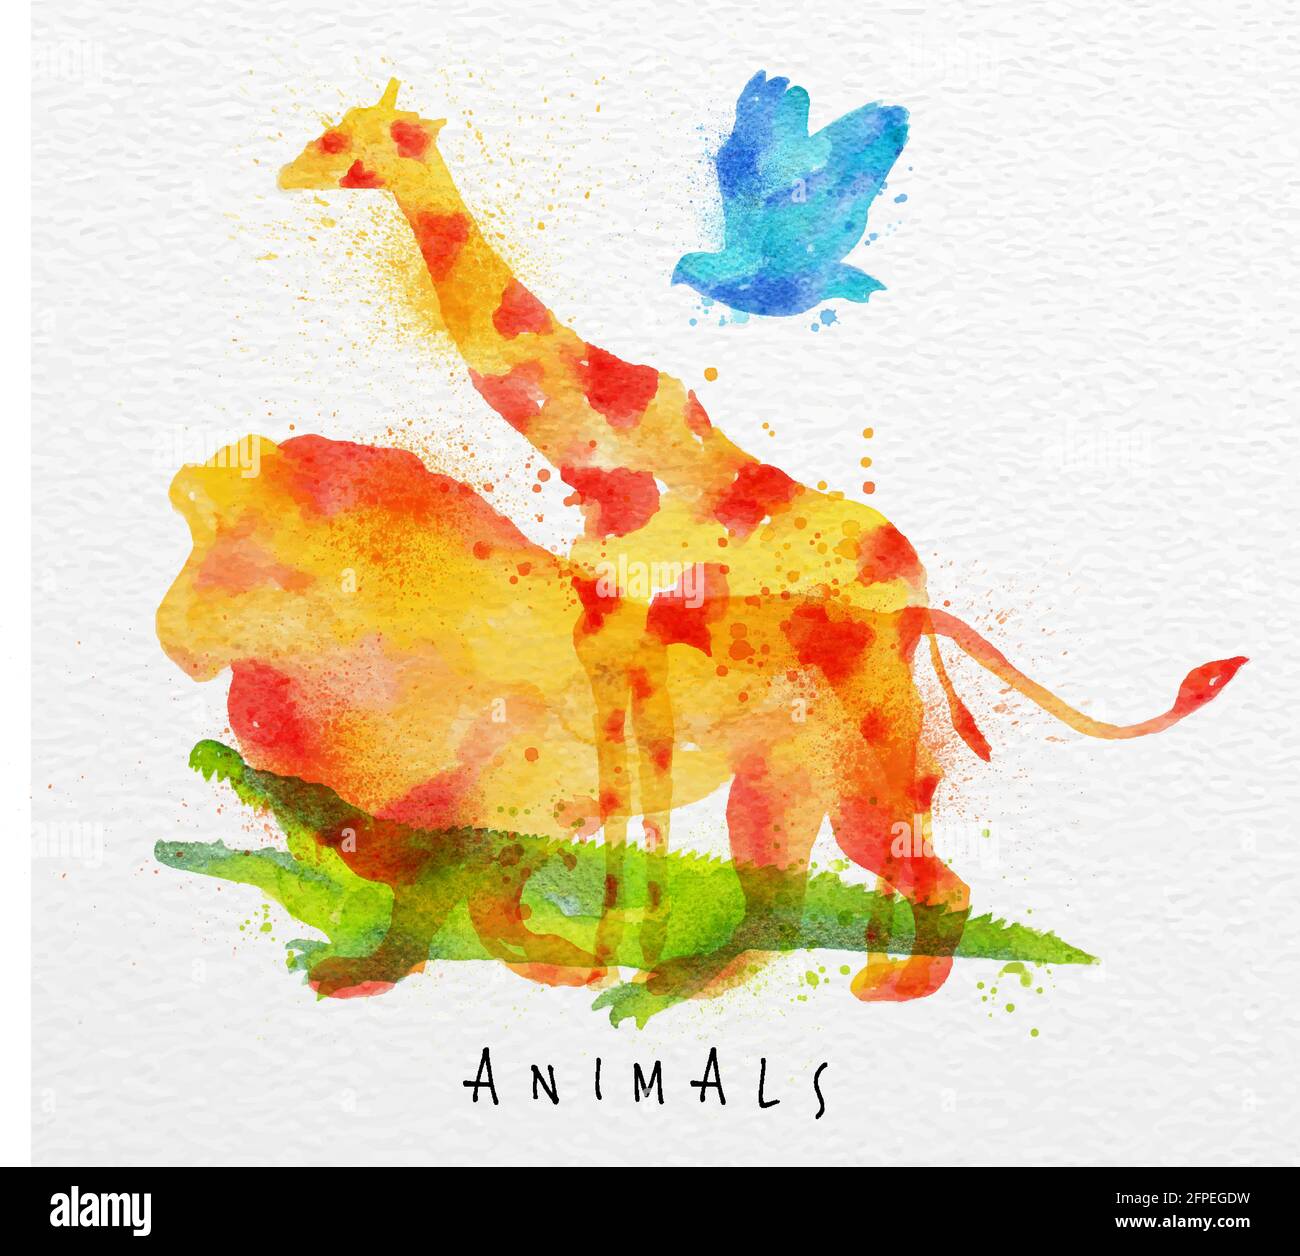 Animaux de couleur, oiseau, girafe, lion, crocodile, dessin sur fond de papier aquarelle lettrage animaux Illustration de Vecteur